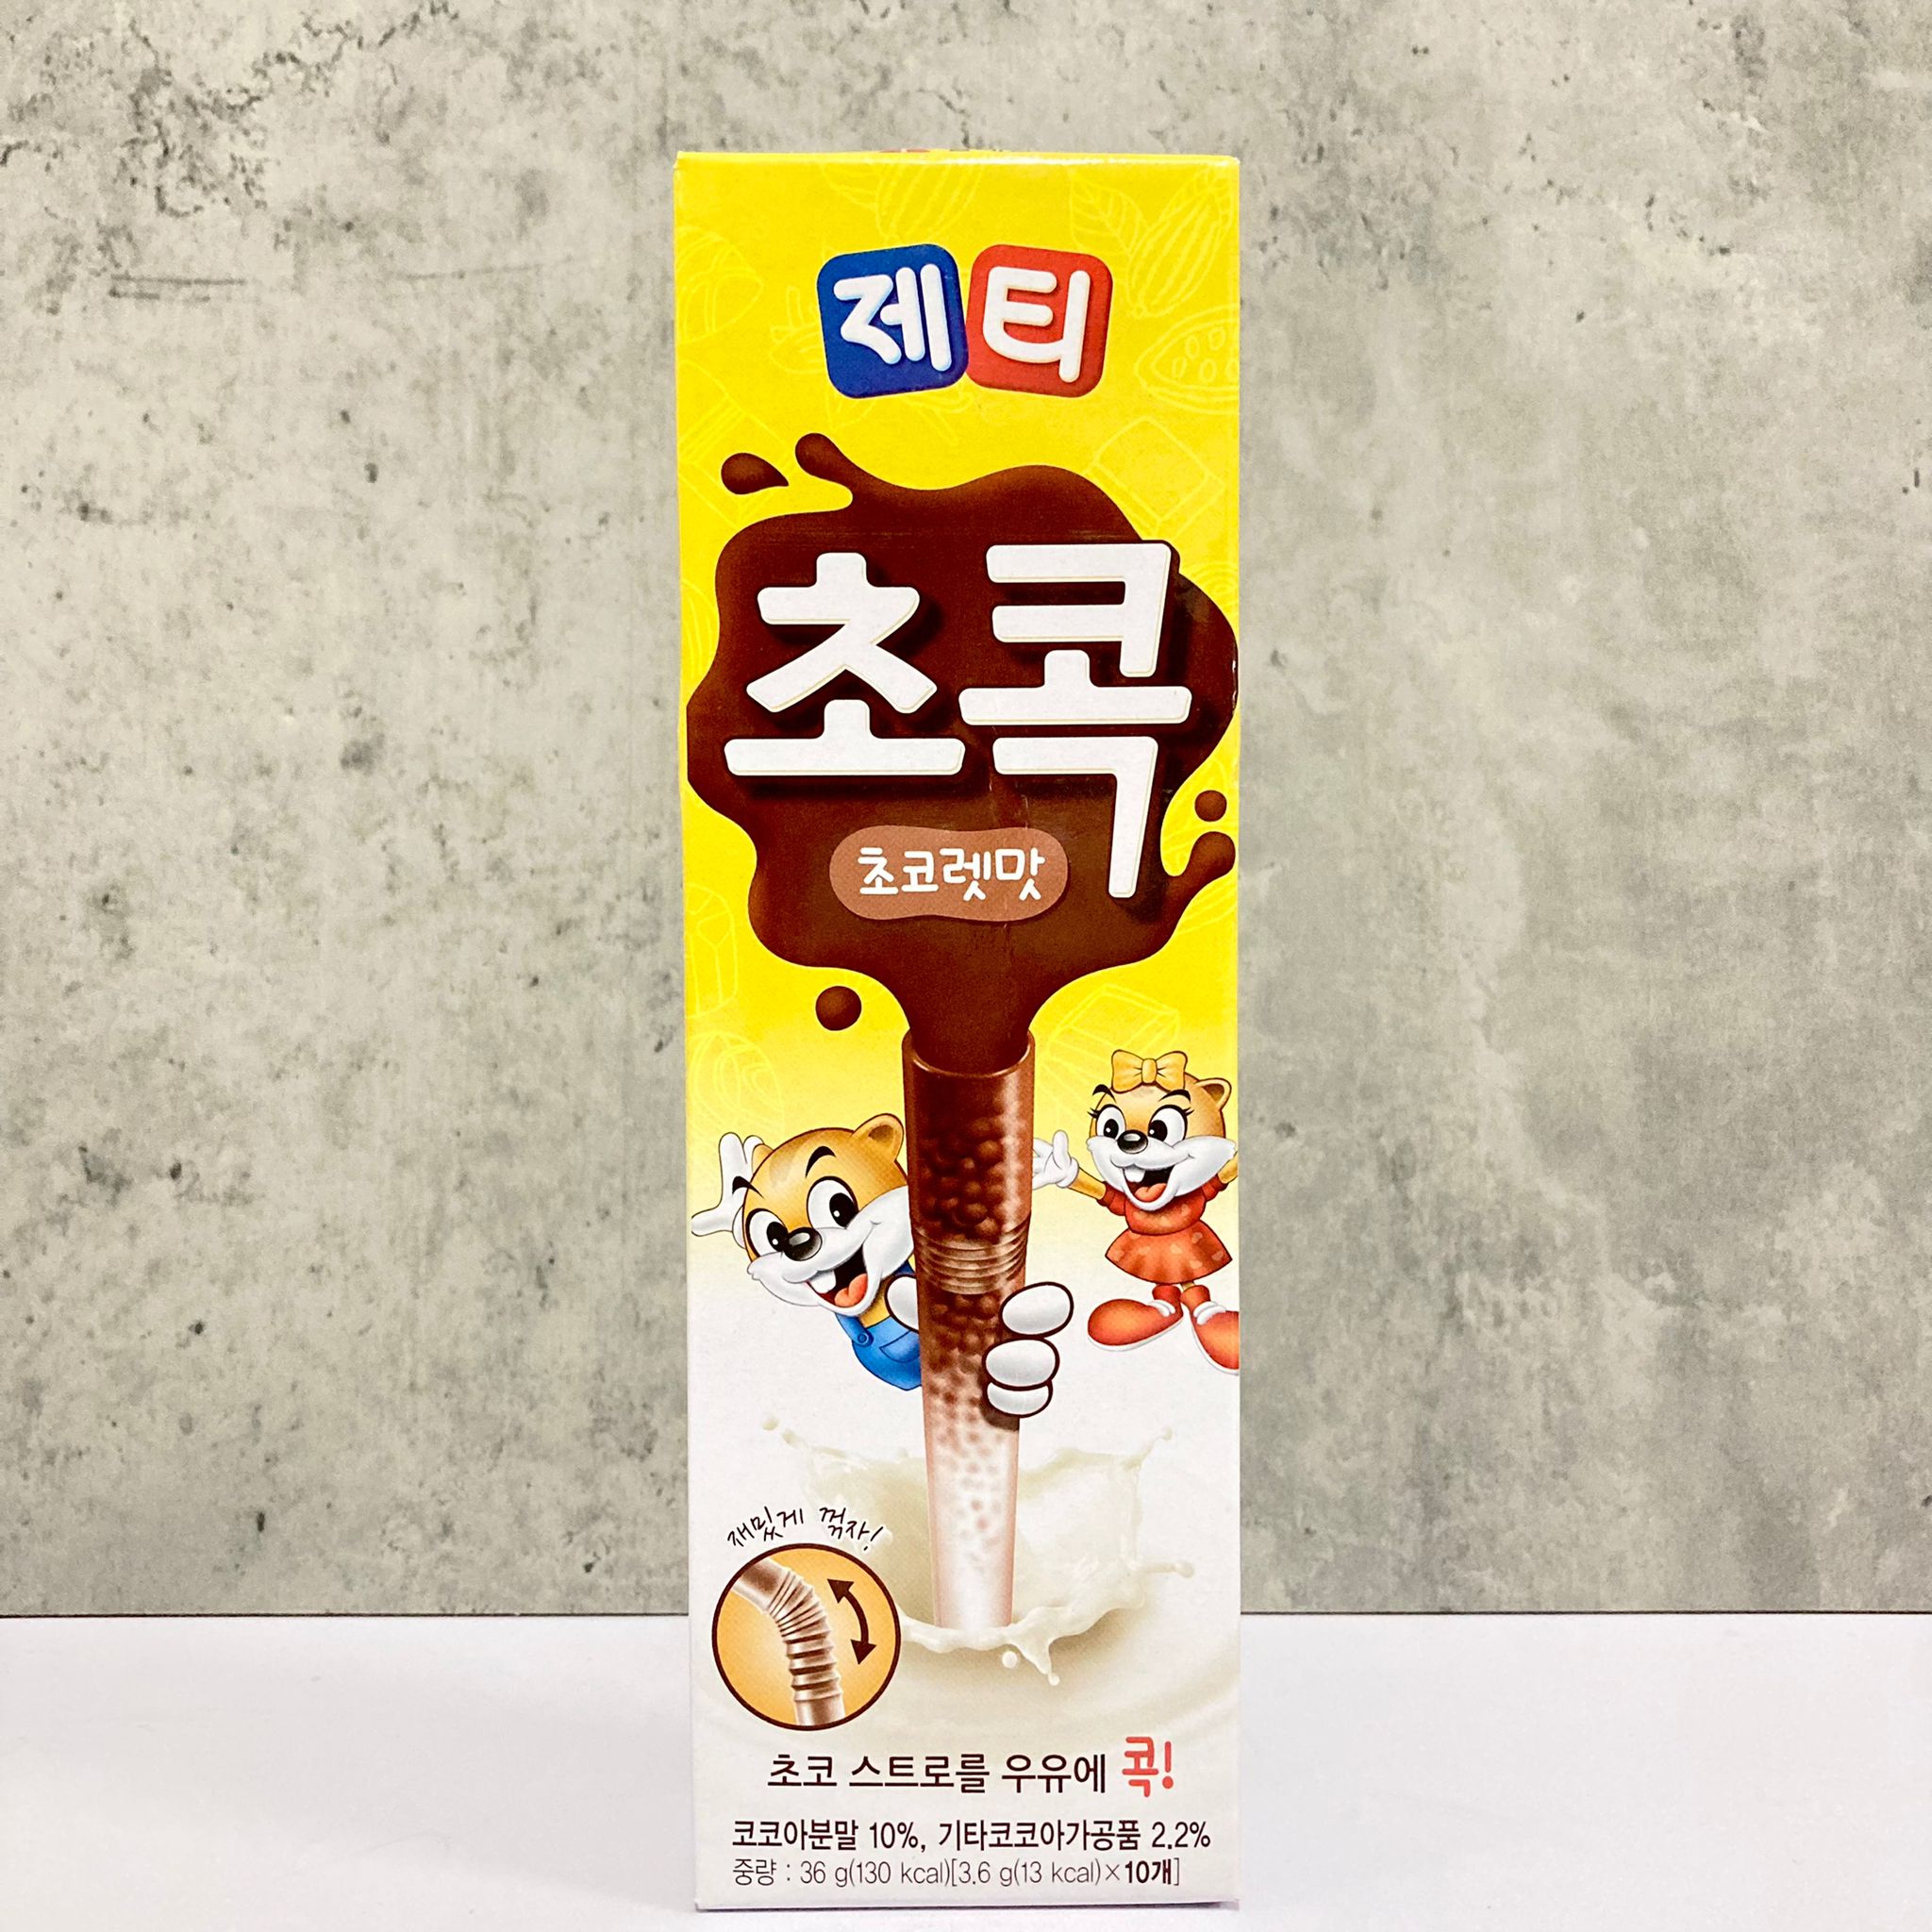 韓國食品-[동서] 제티 (초코렛맛) 36g